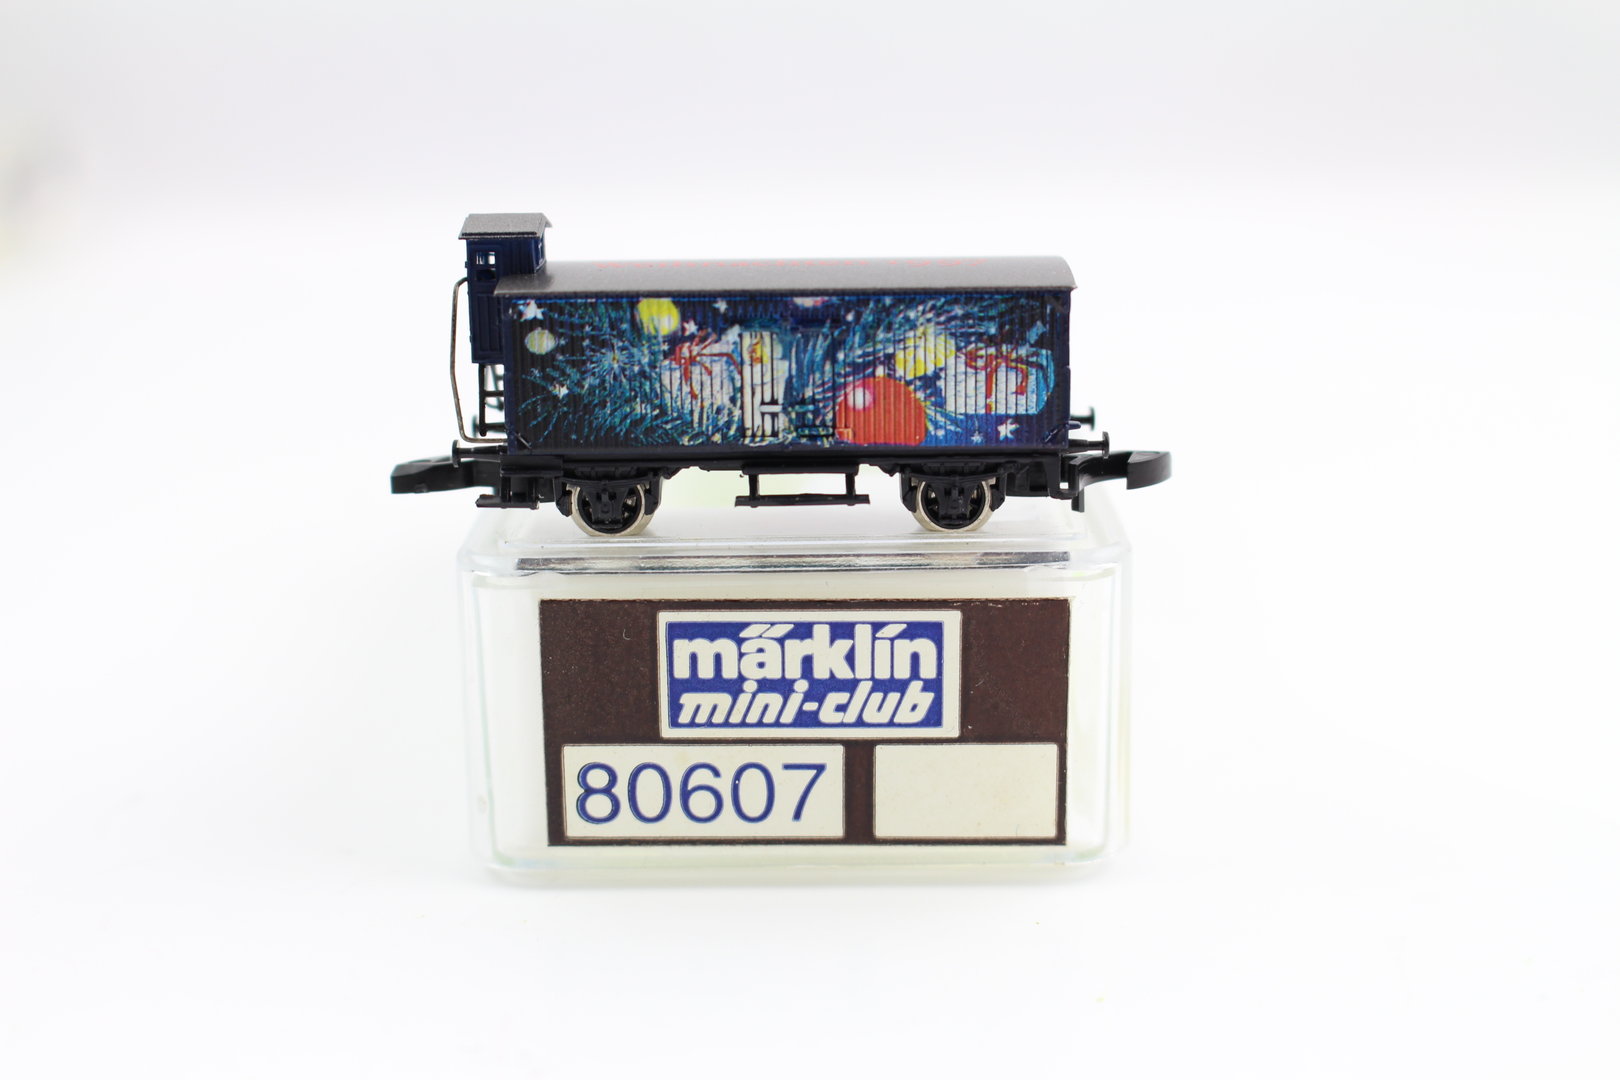 OVP 80607 Weihnachtswagen 1997 Märklin Spur Z mini-club 